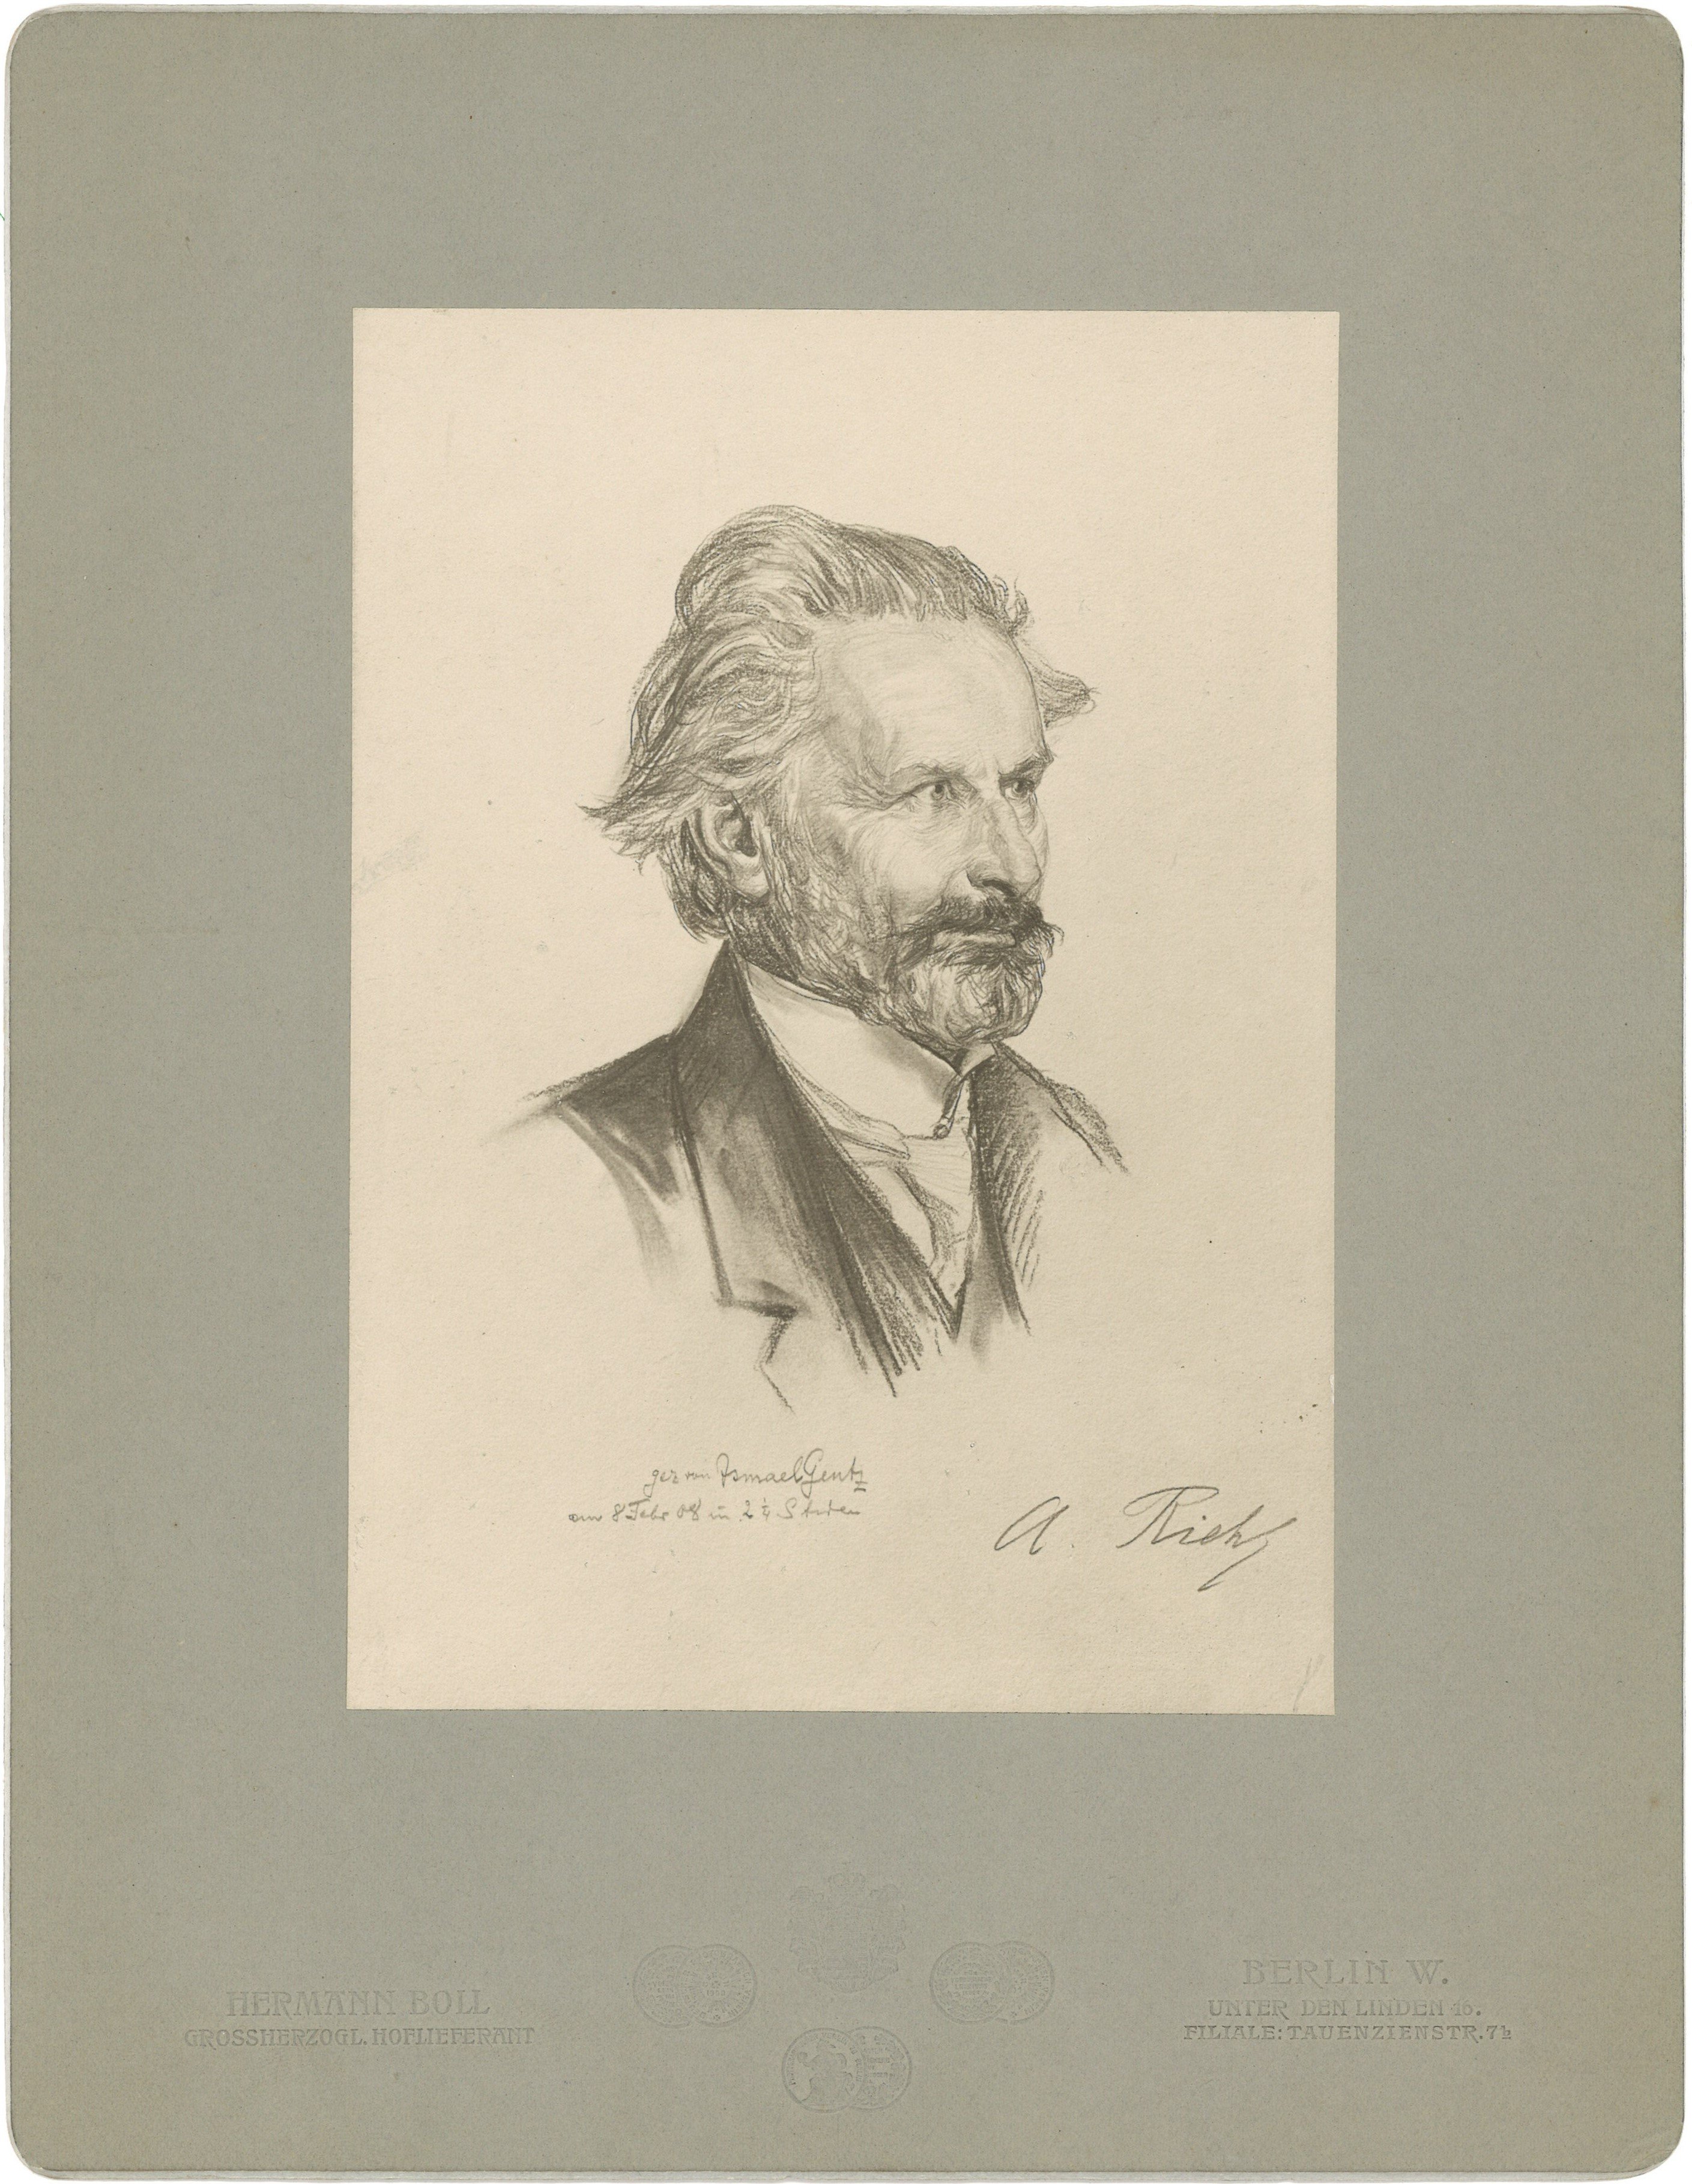 Riehl, Alois (1844-1924), Philosoph (Landesgeschichtliche Vereinigung für die Mark Brandenburg e.V., Archiv CC BY)